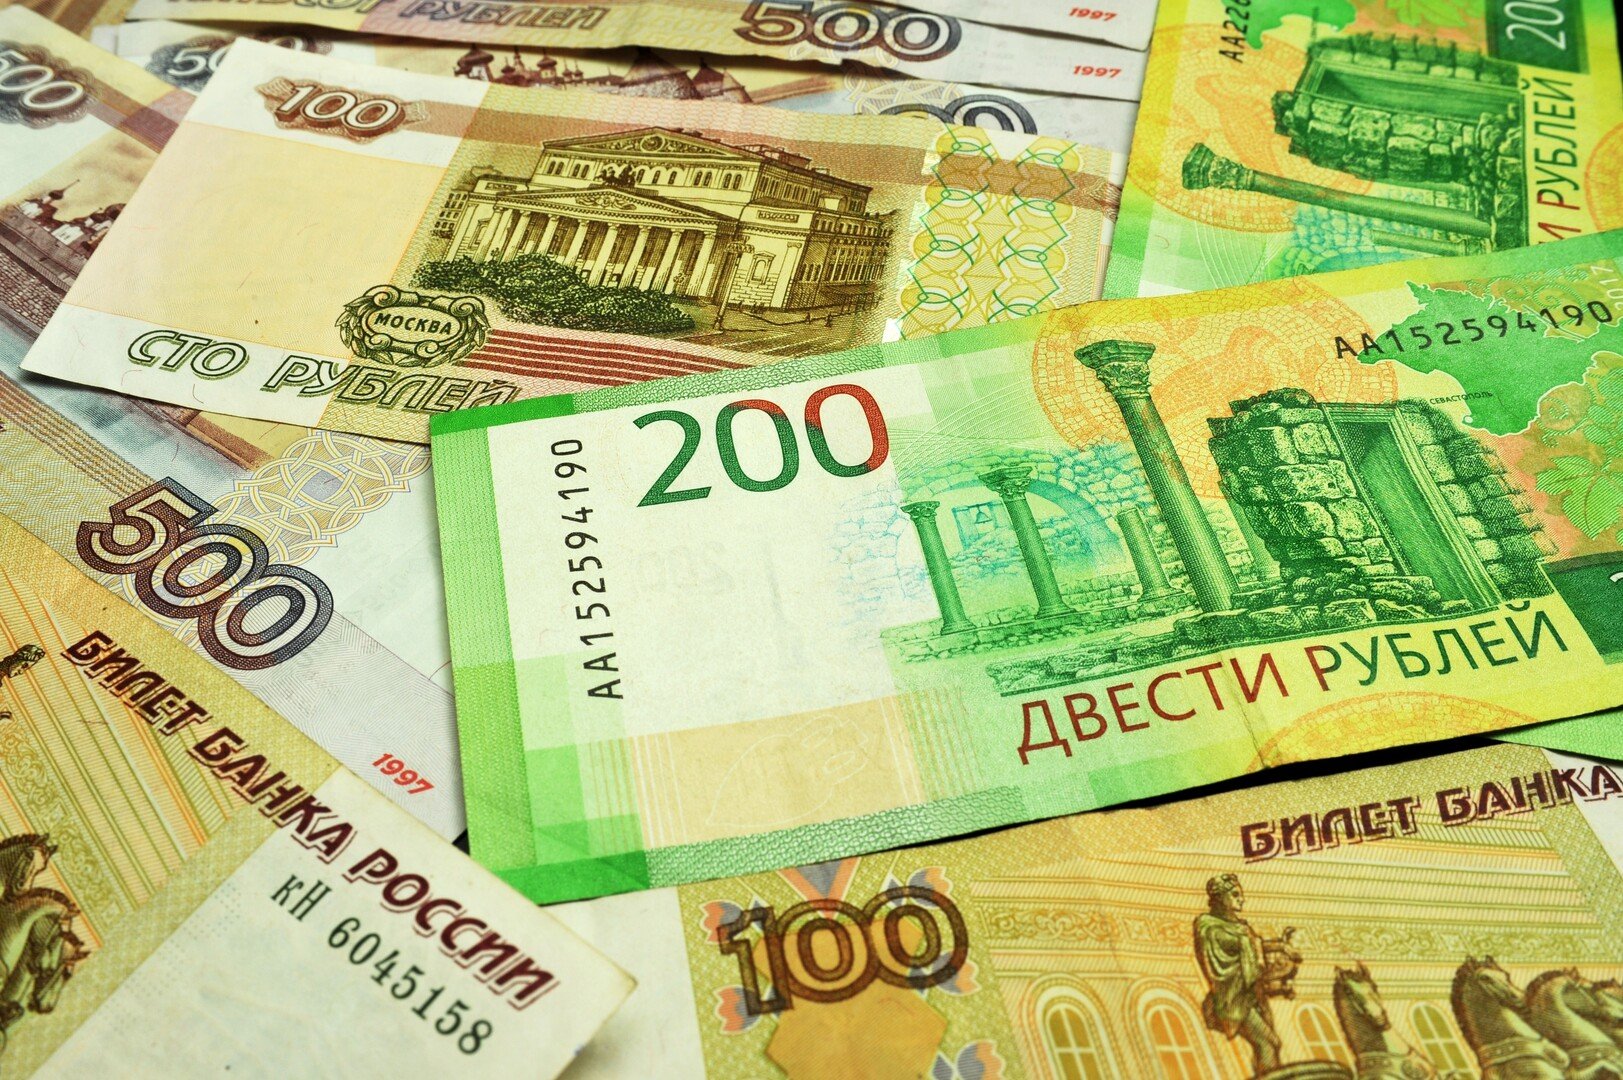 المالية الروسية تطرح سندات في السوق المحلية بنجاح